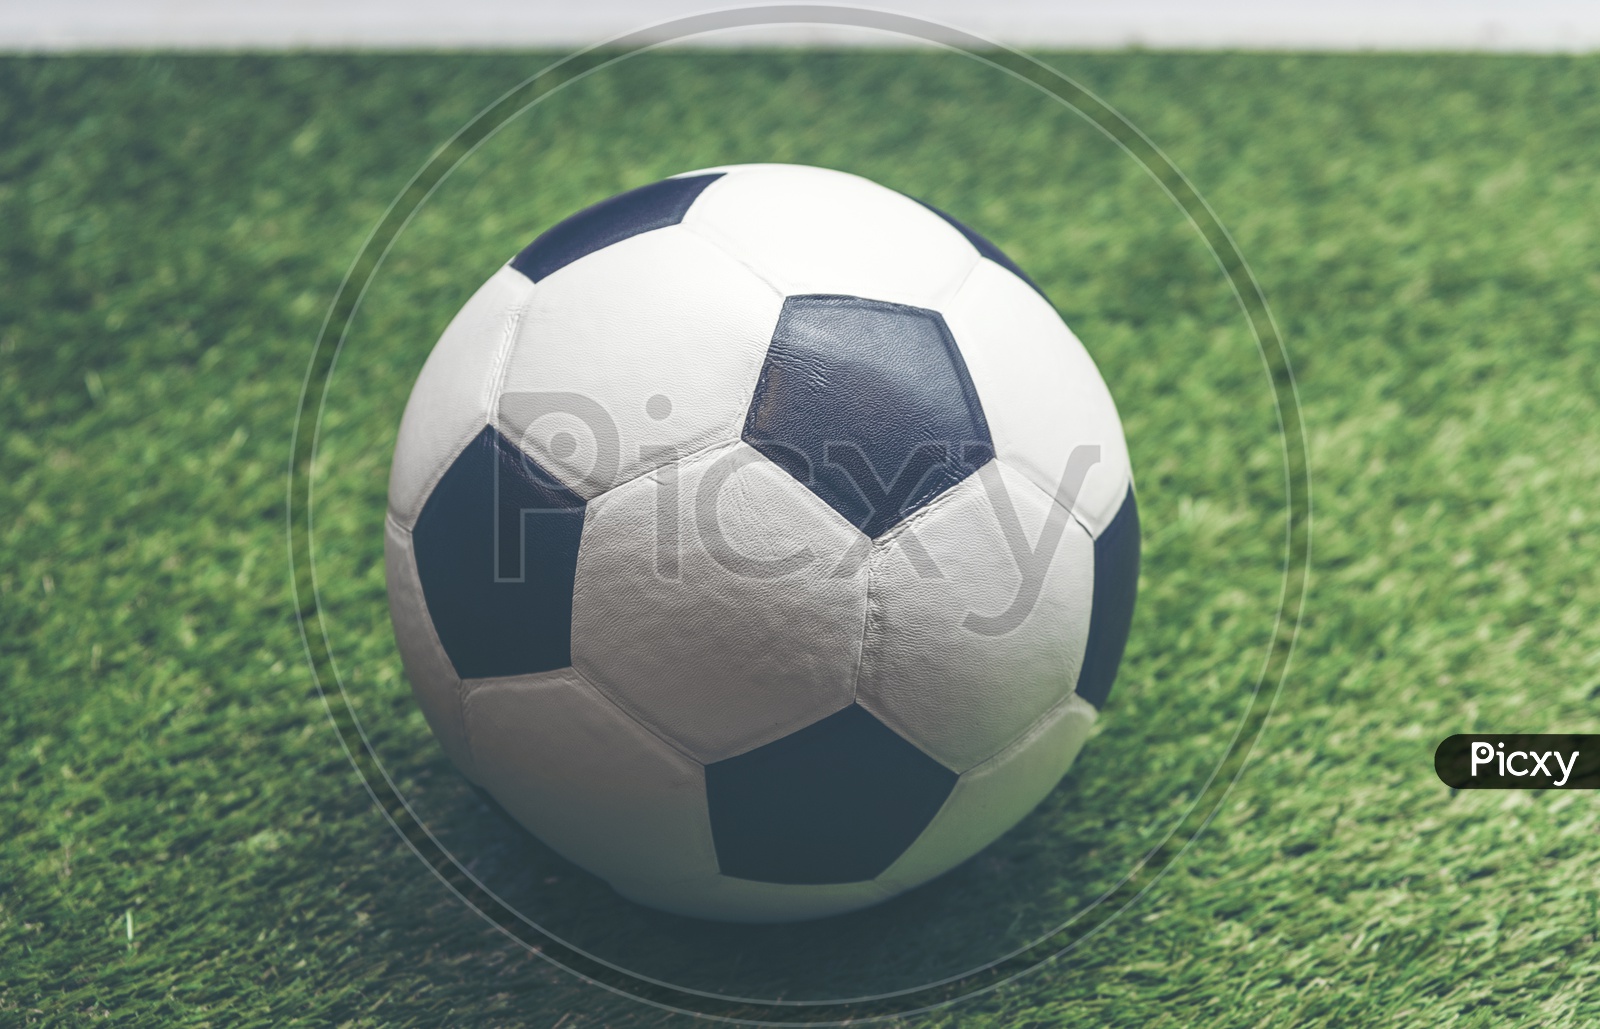 A soccer ball closeup